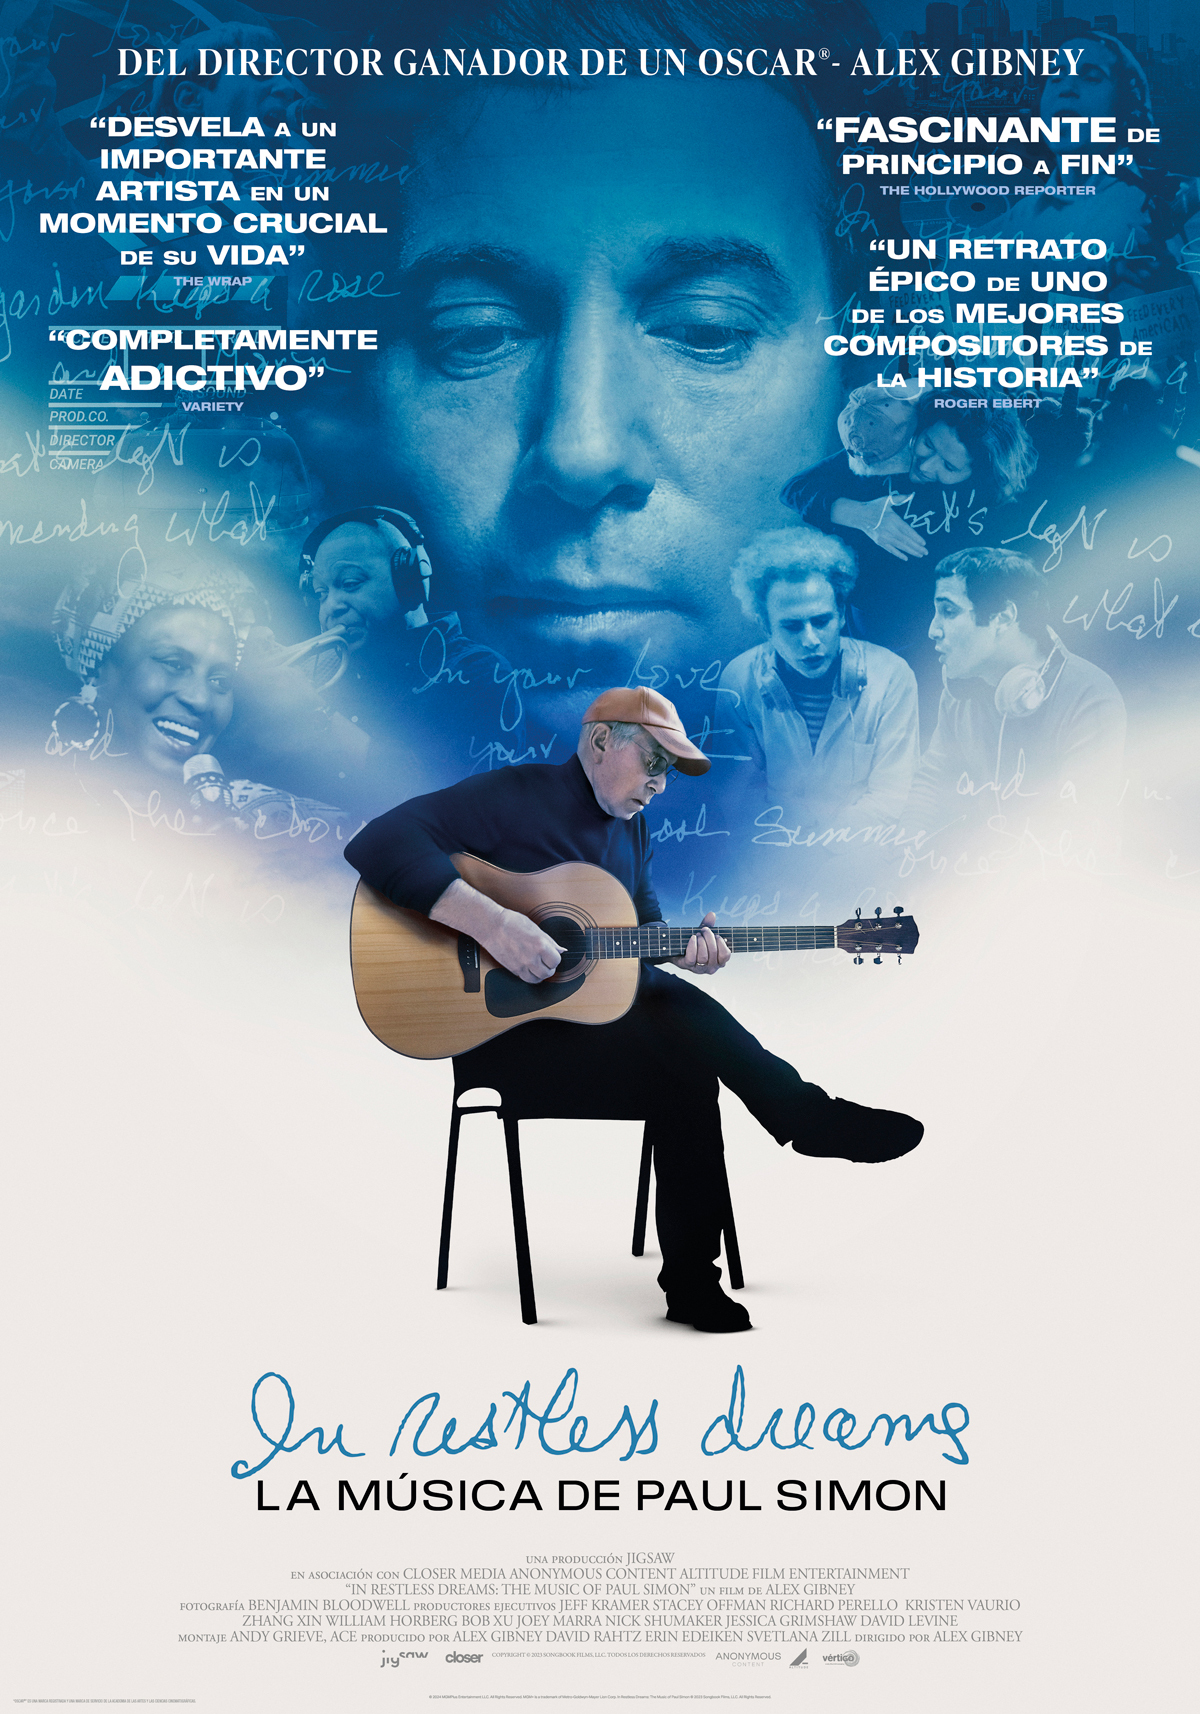 Estreno en cines españoles el 27 de junio de la película documental sobre Paul Simon 'In restless dreams'